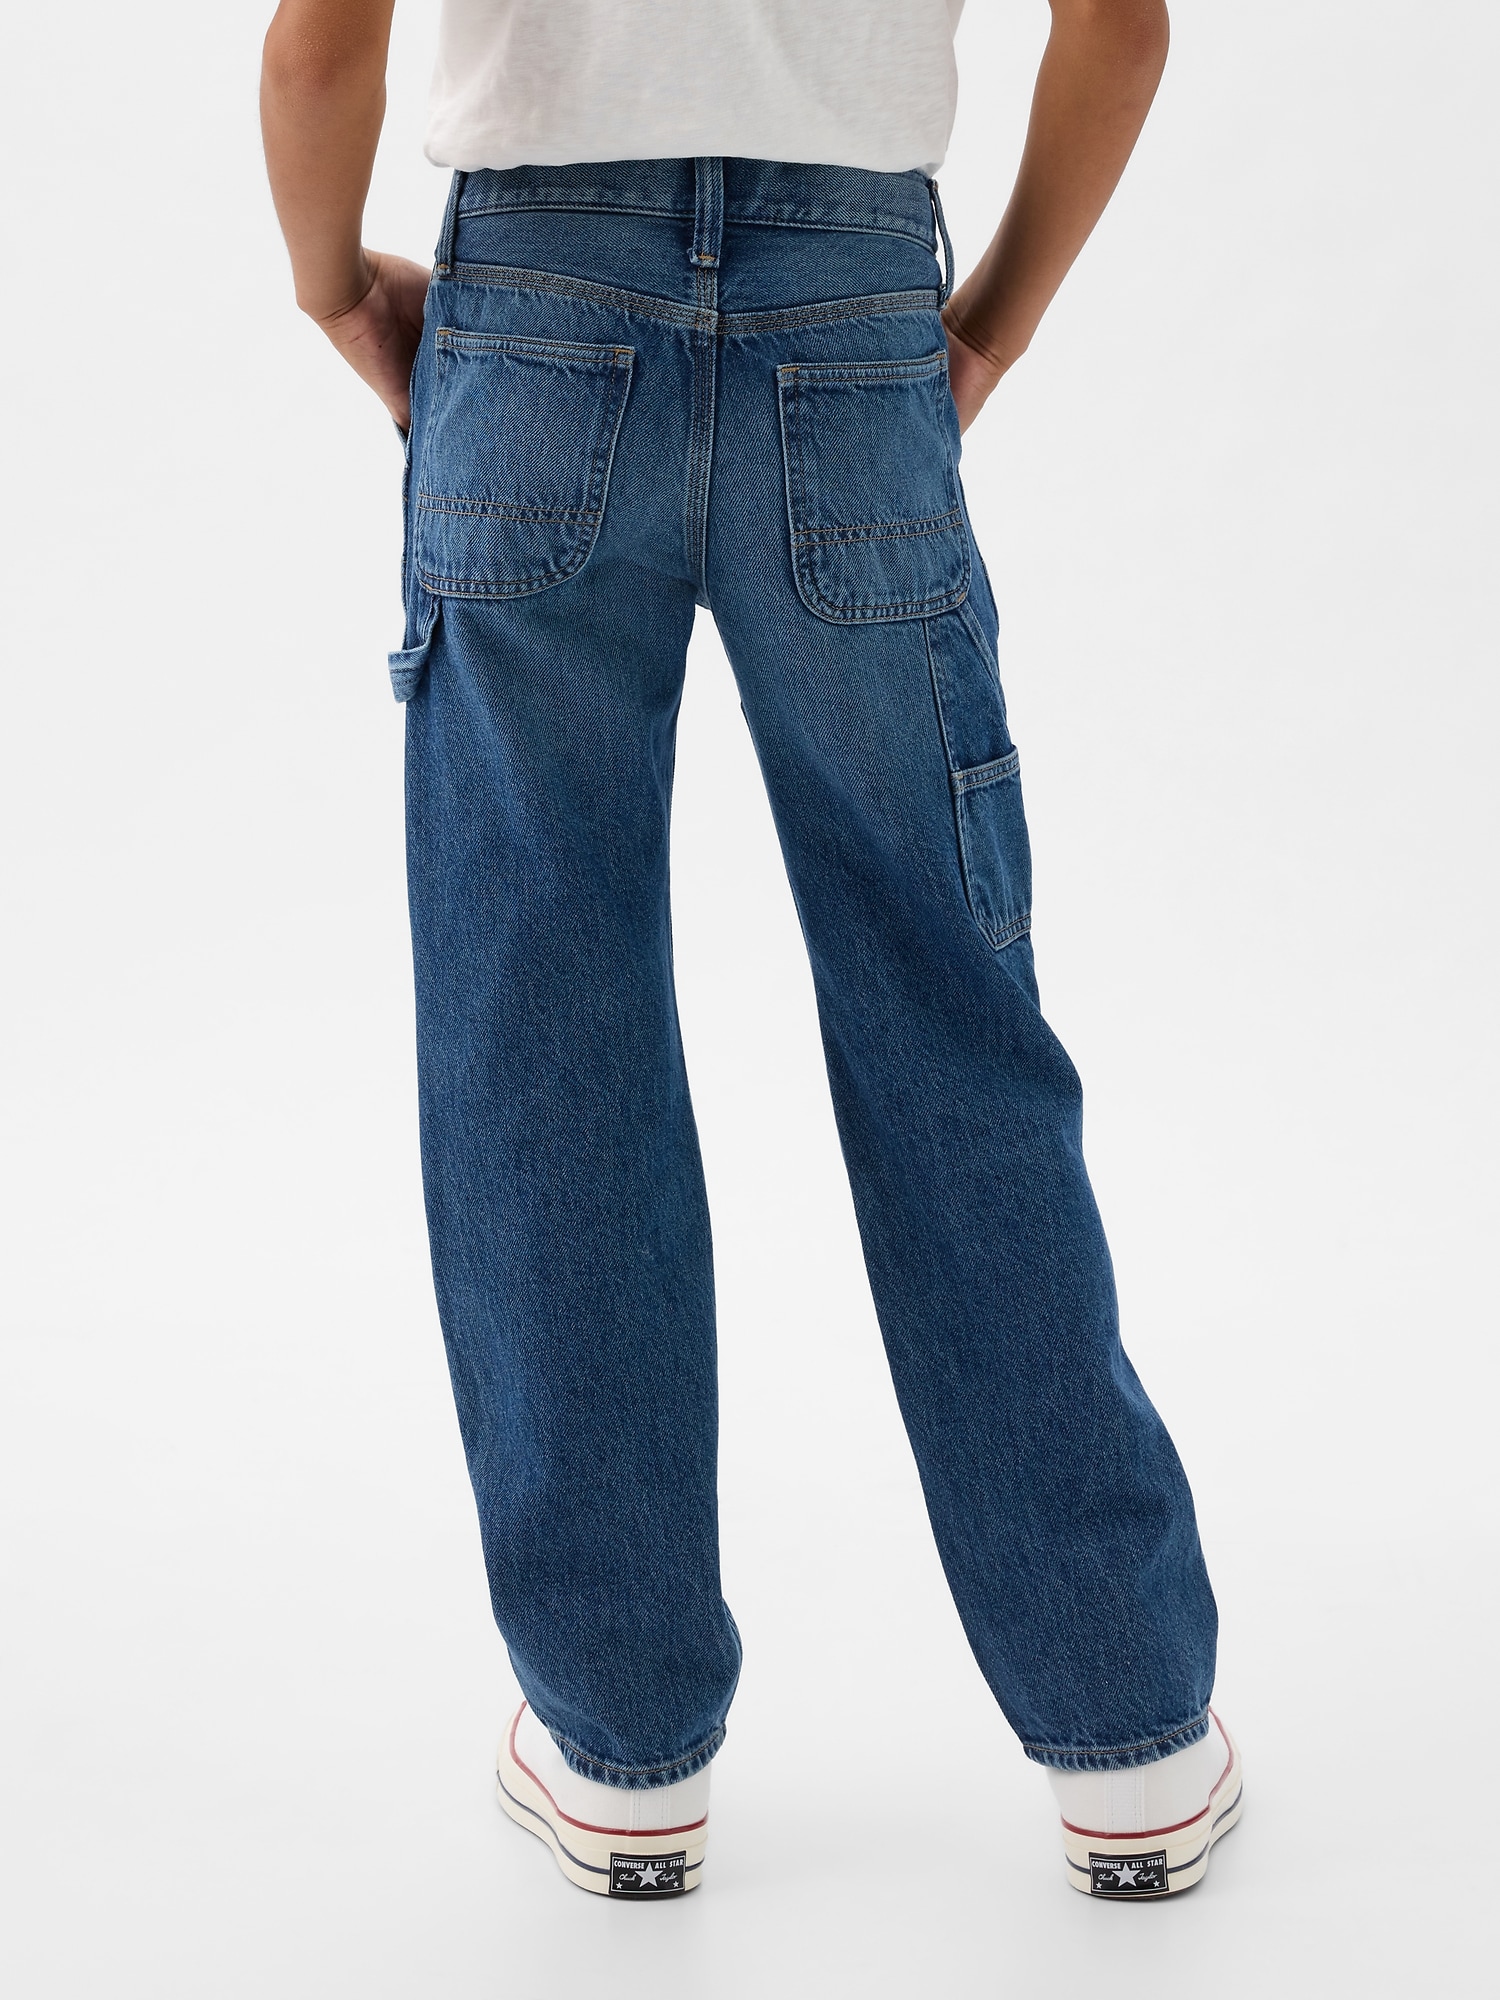 갭 90s Original Carpenter Jeans